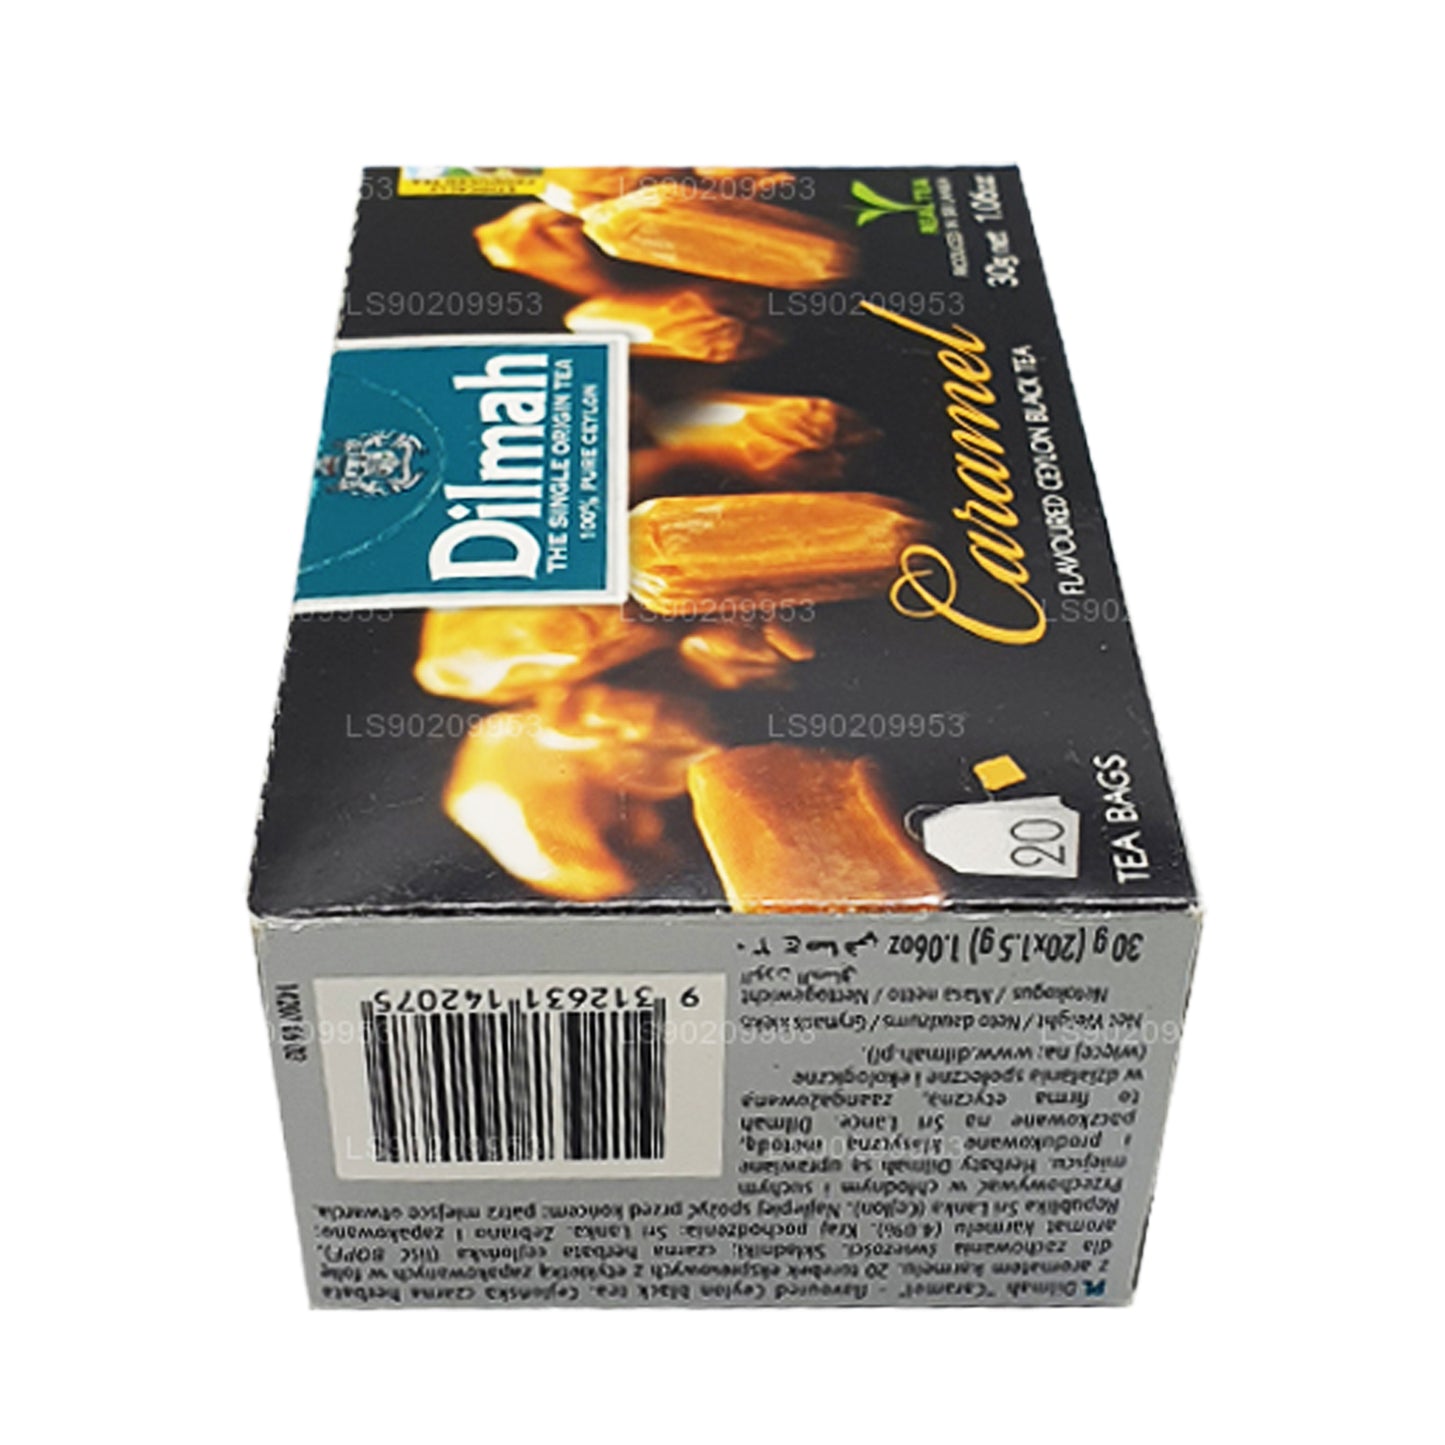 Чай Dilmah со вкусом карамели (40 г) 20 пакетиков